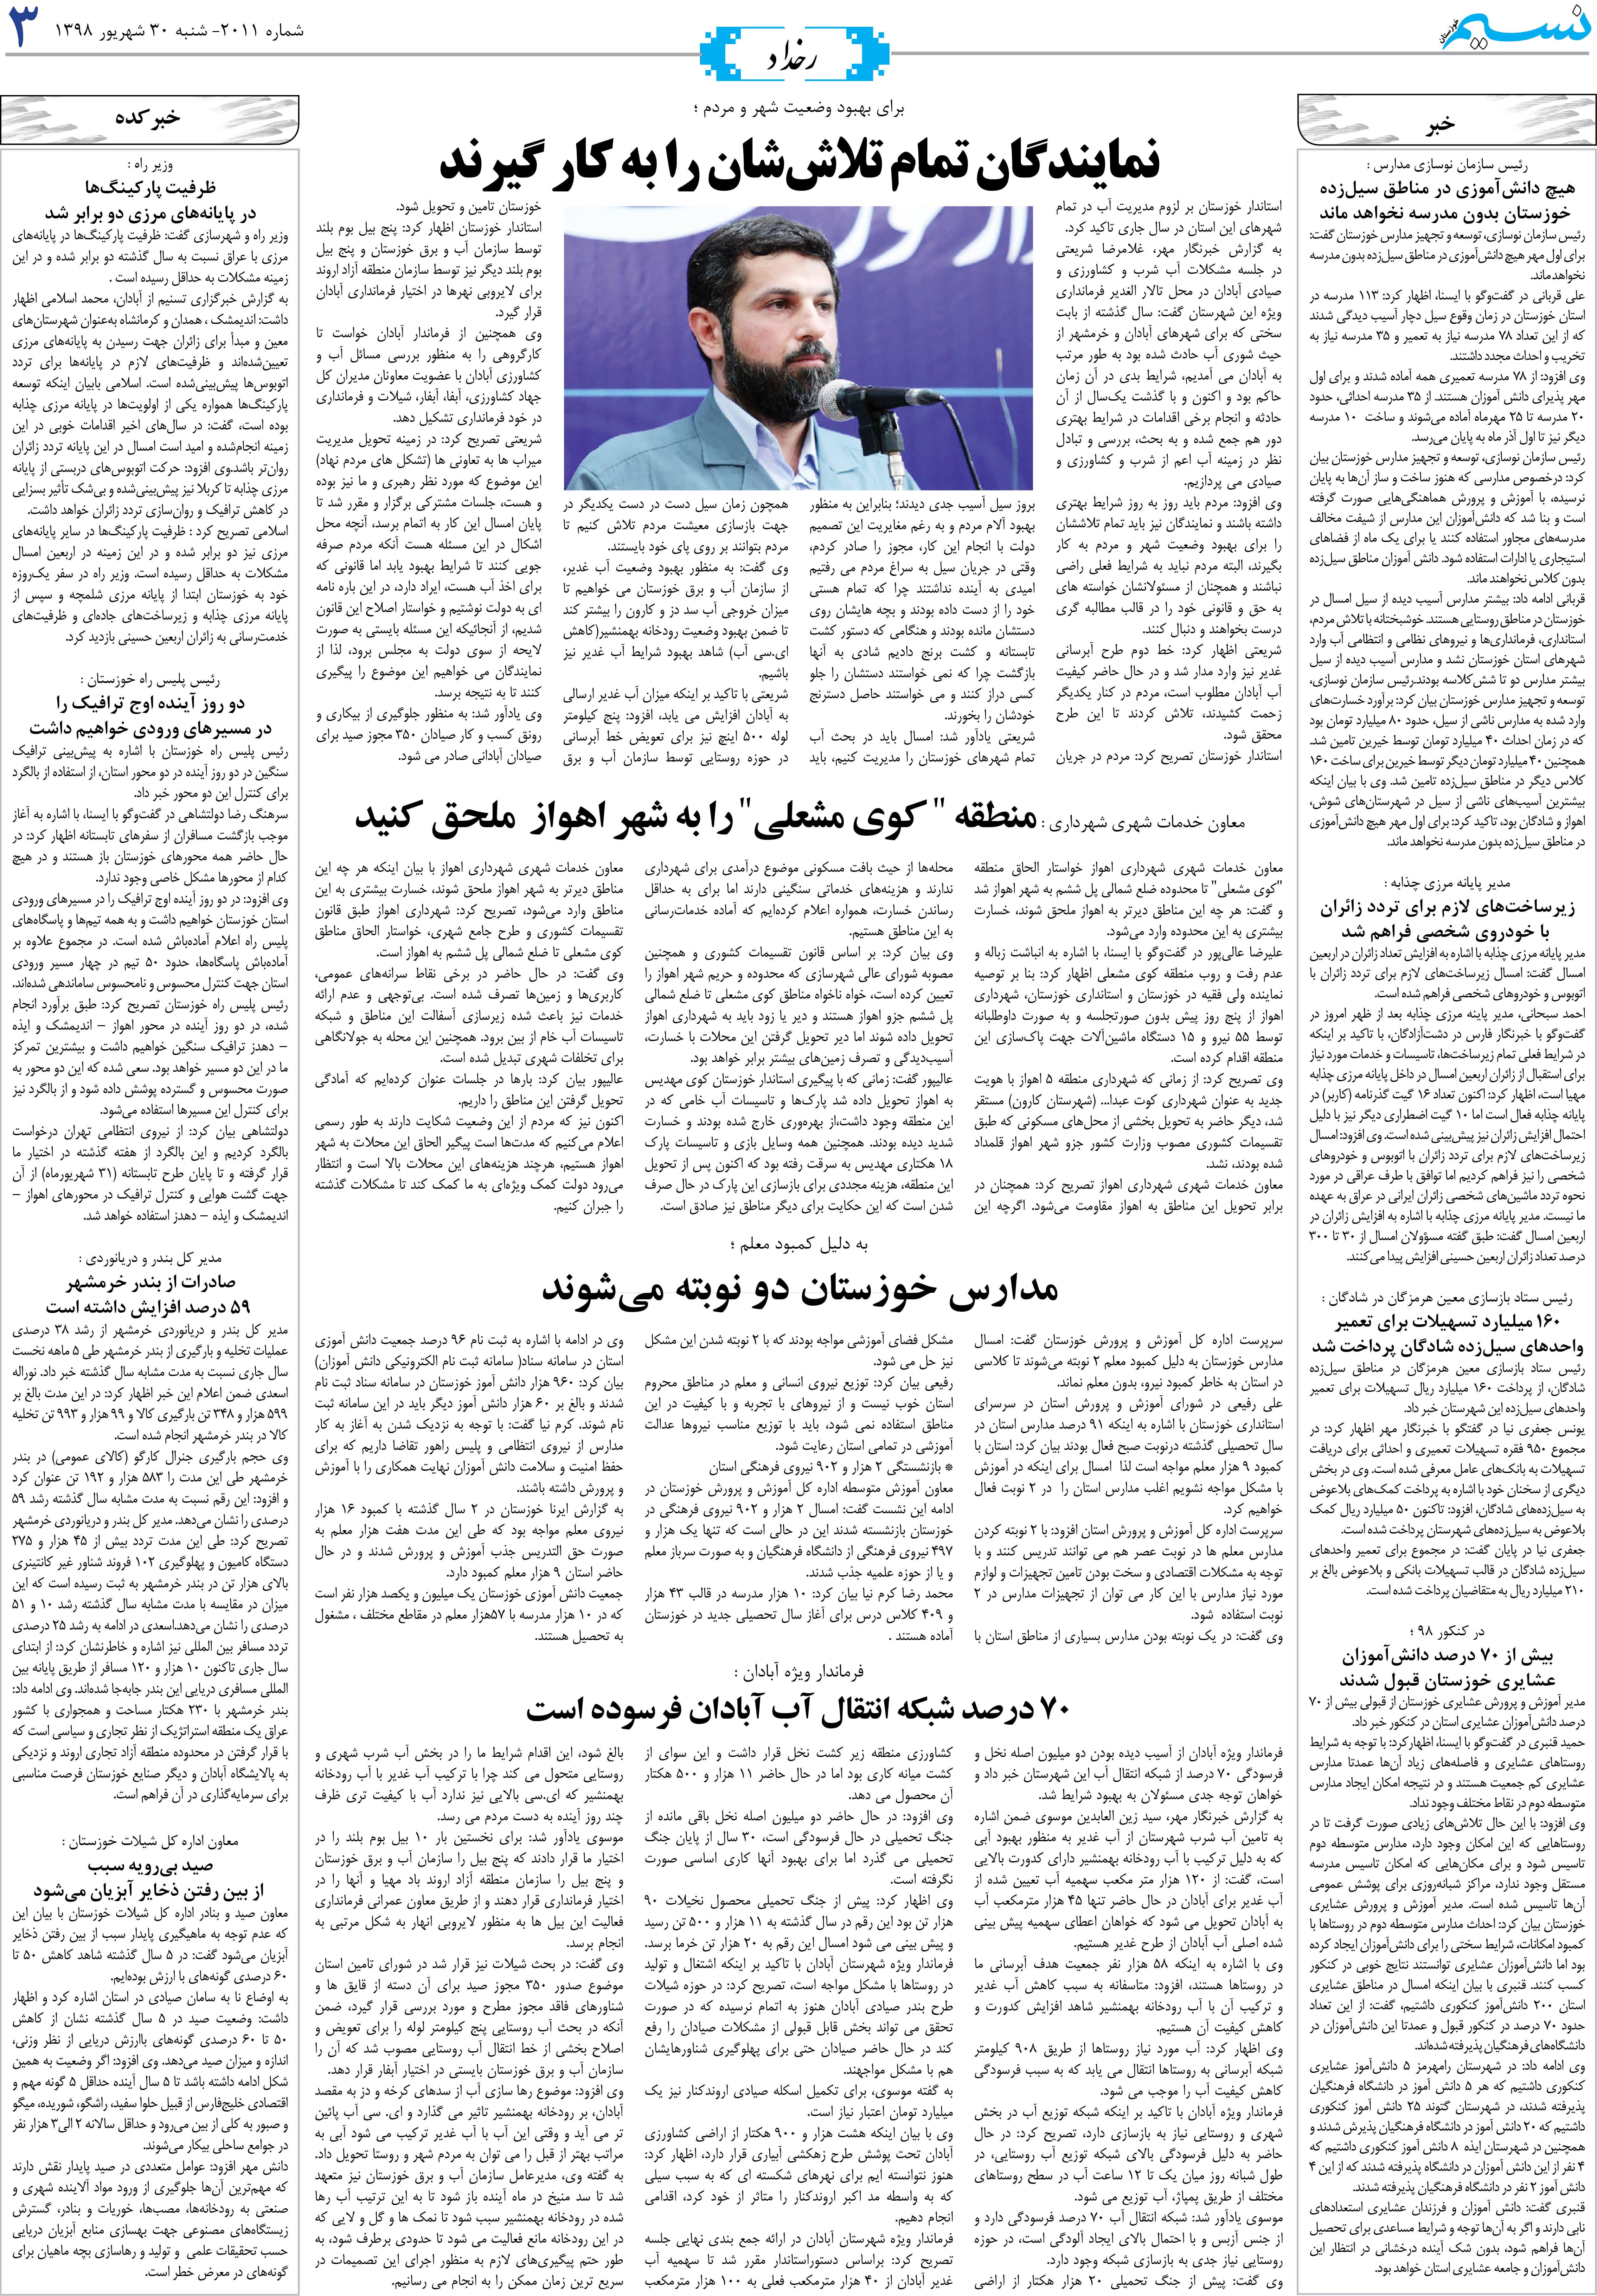 صفحه رخداد روزنامه نسیم شماره 2011